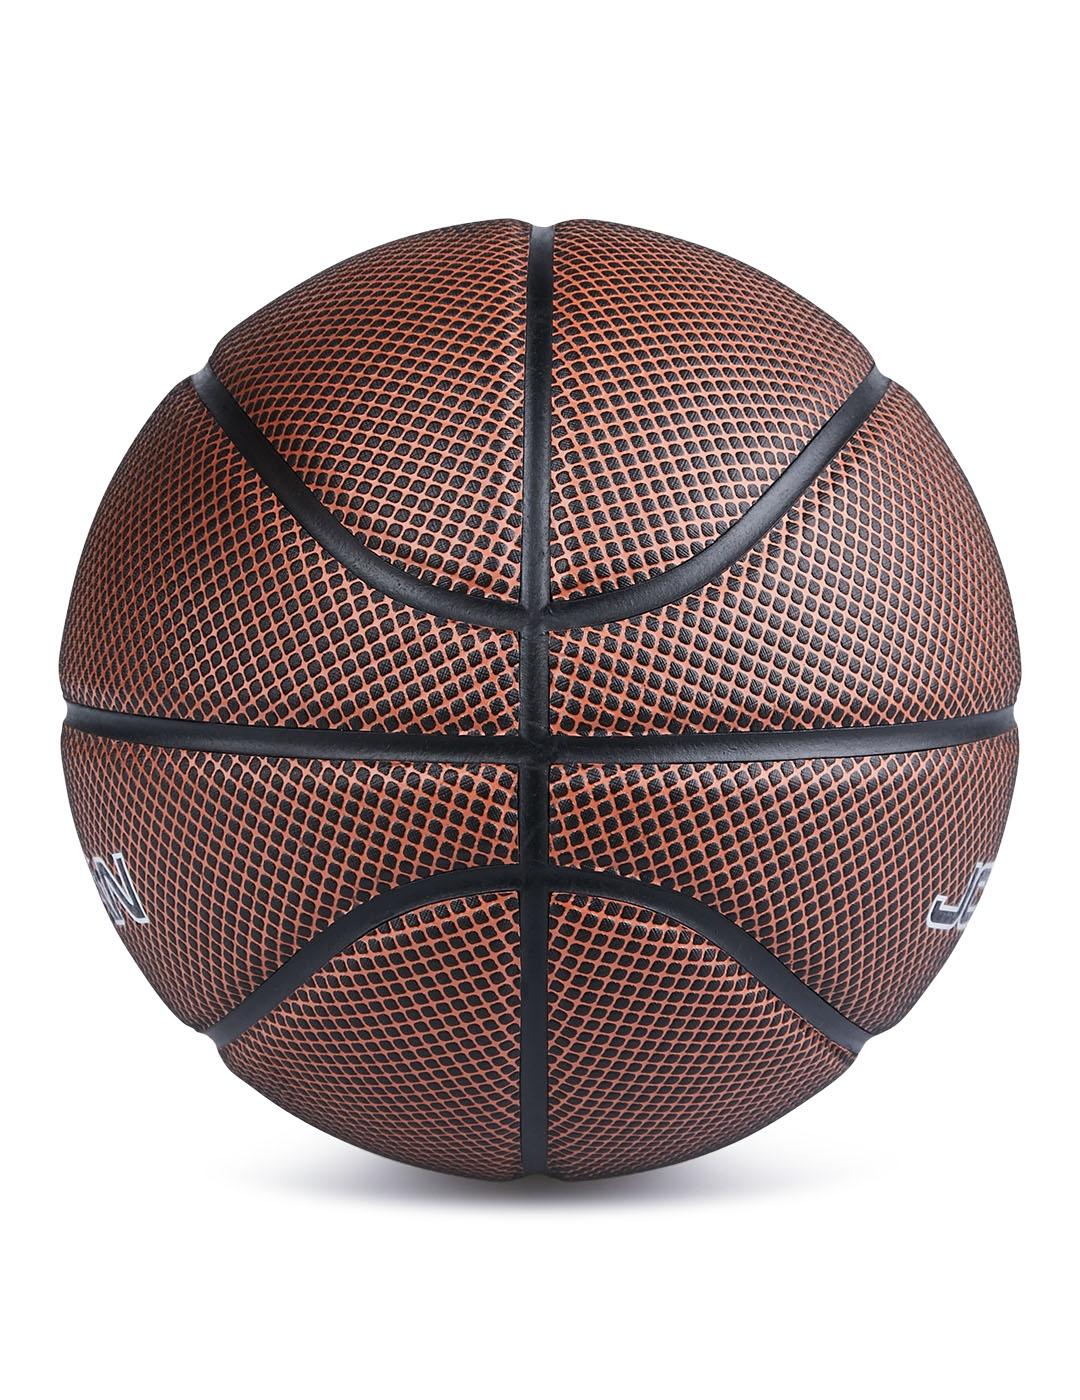 Balon Basket Nike Jordan Legacy Marron